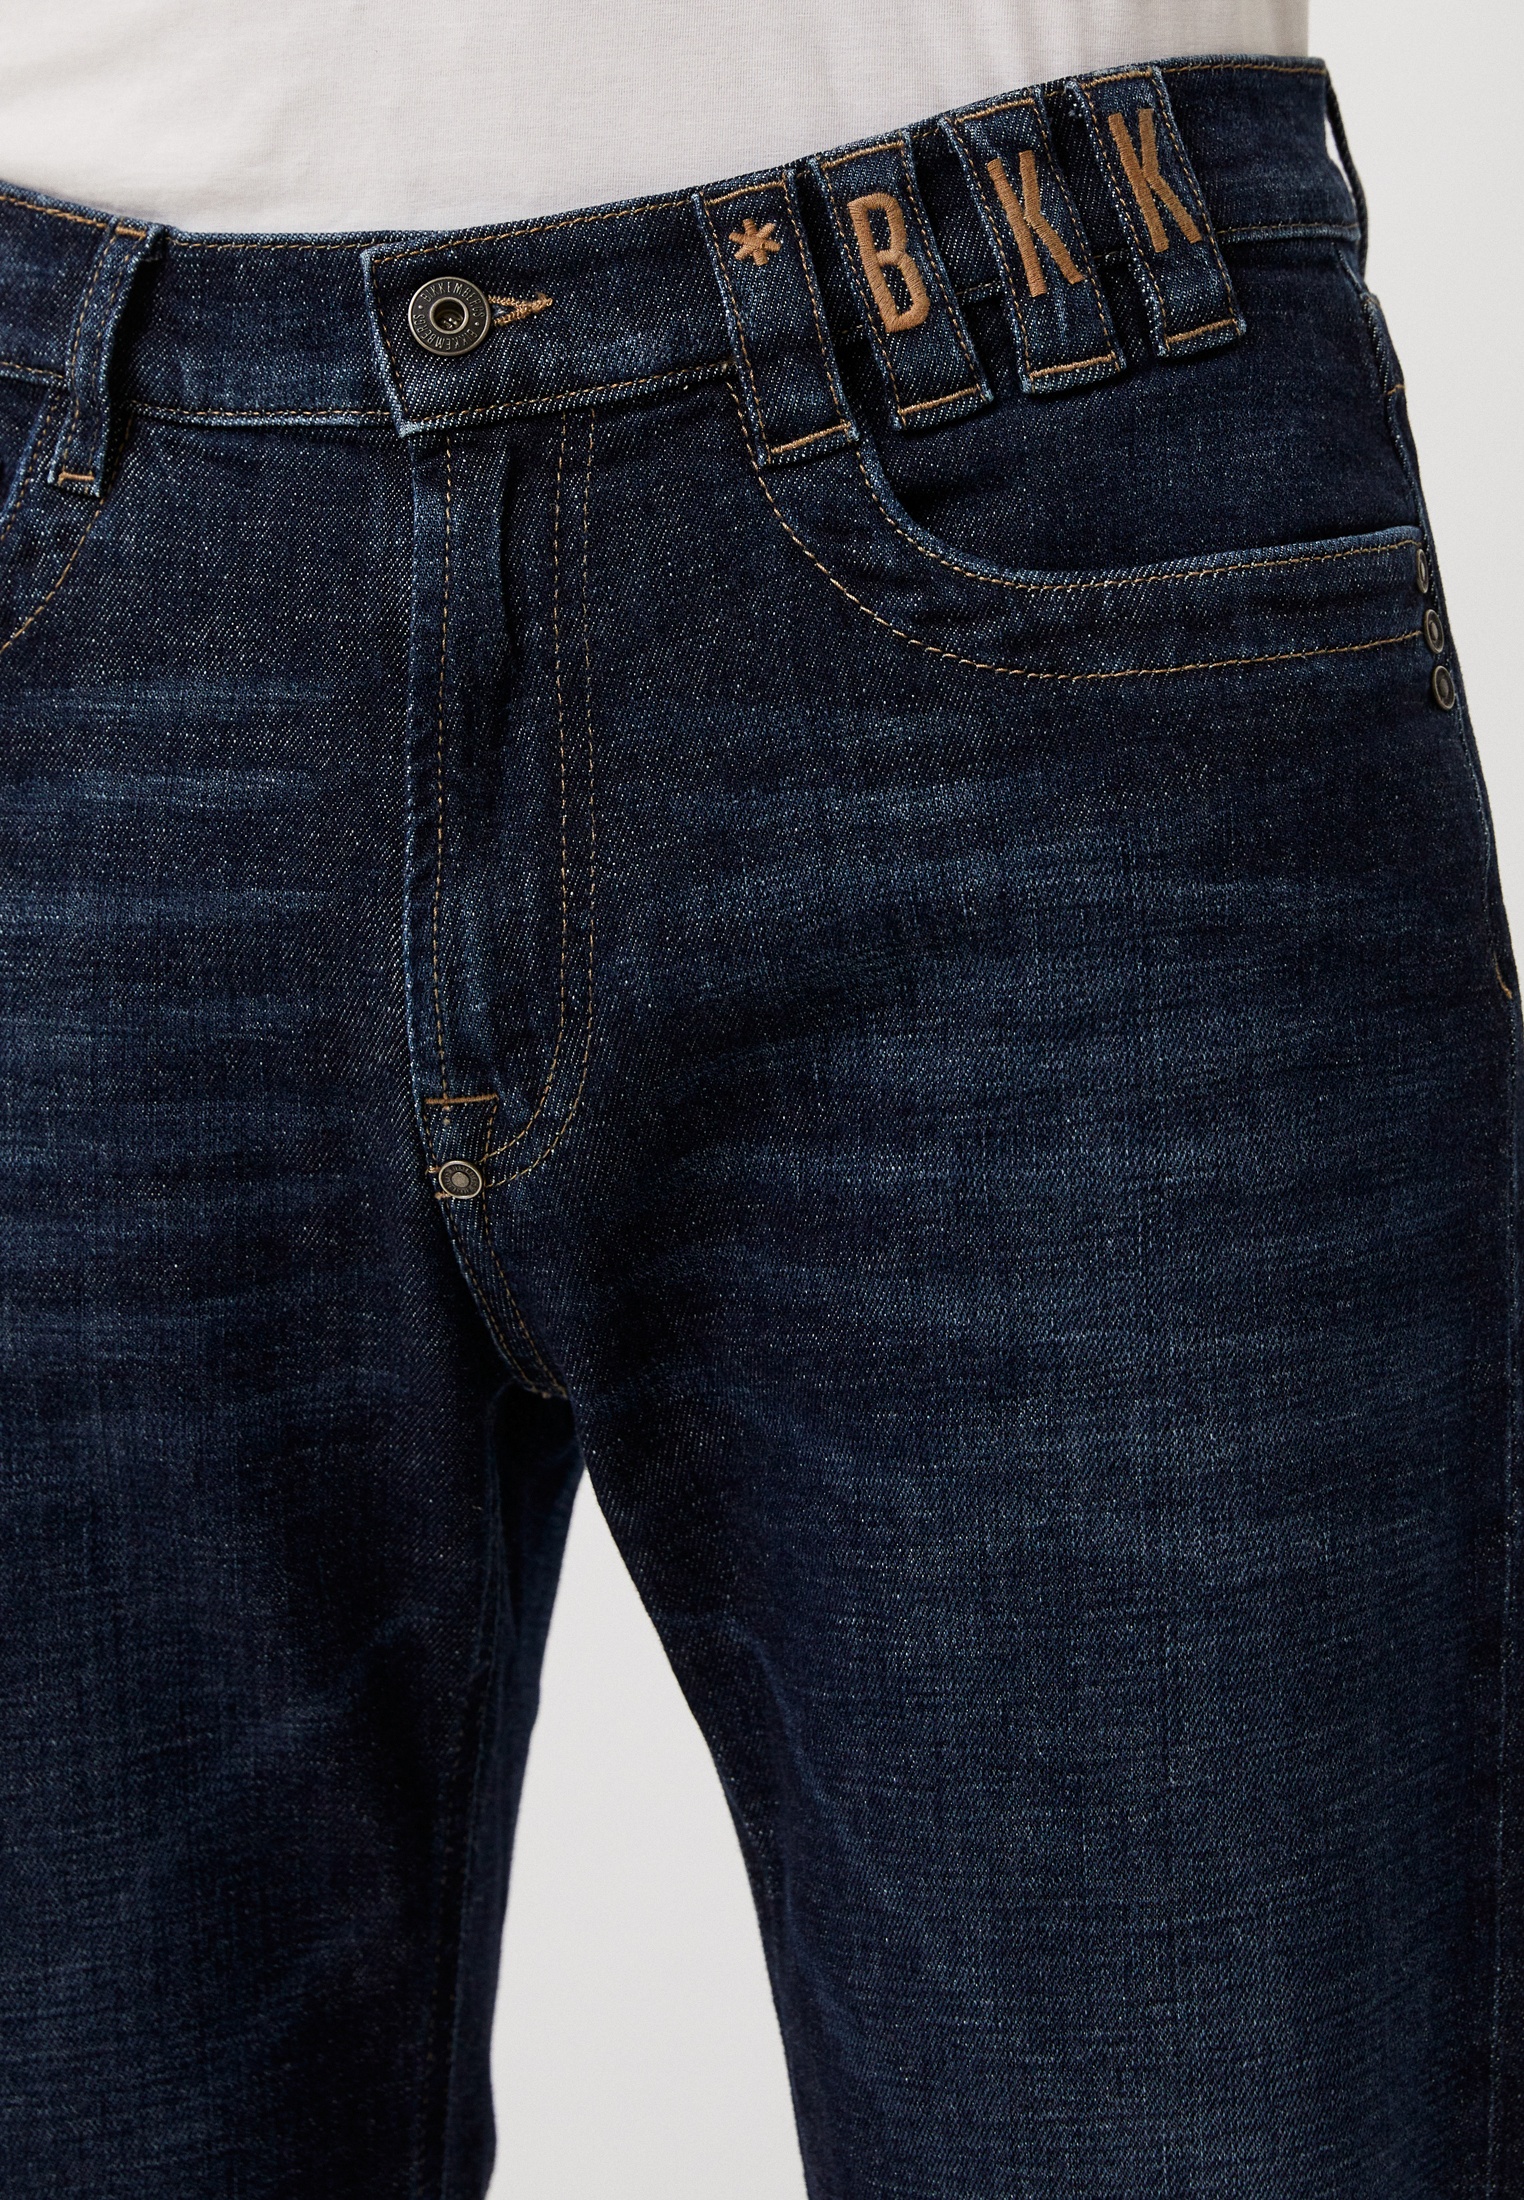 Мужские прямые джинсы Bikkembergs (Биккембергс) C Q 113 80 S 3670: изображение 4